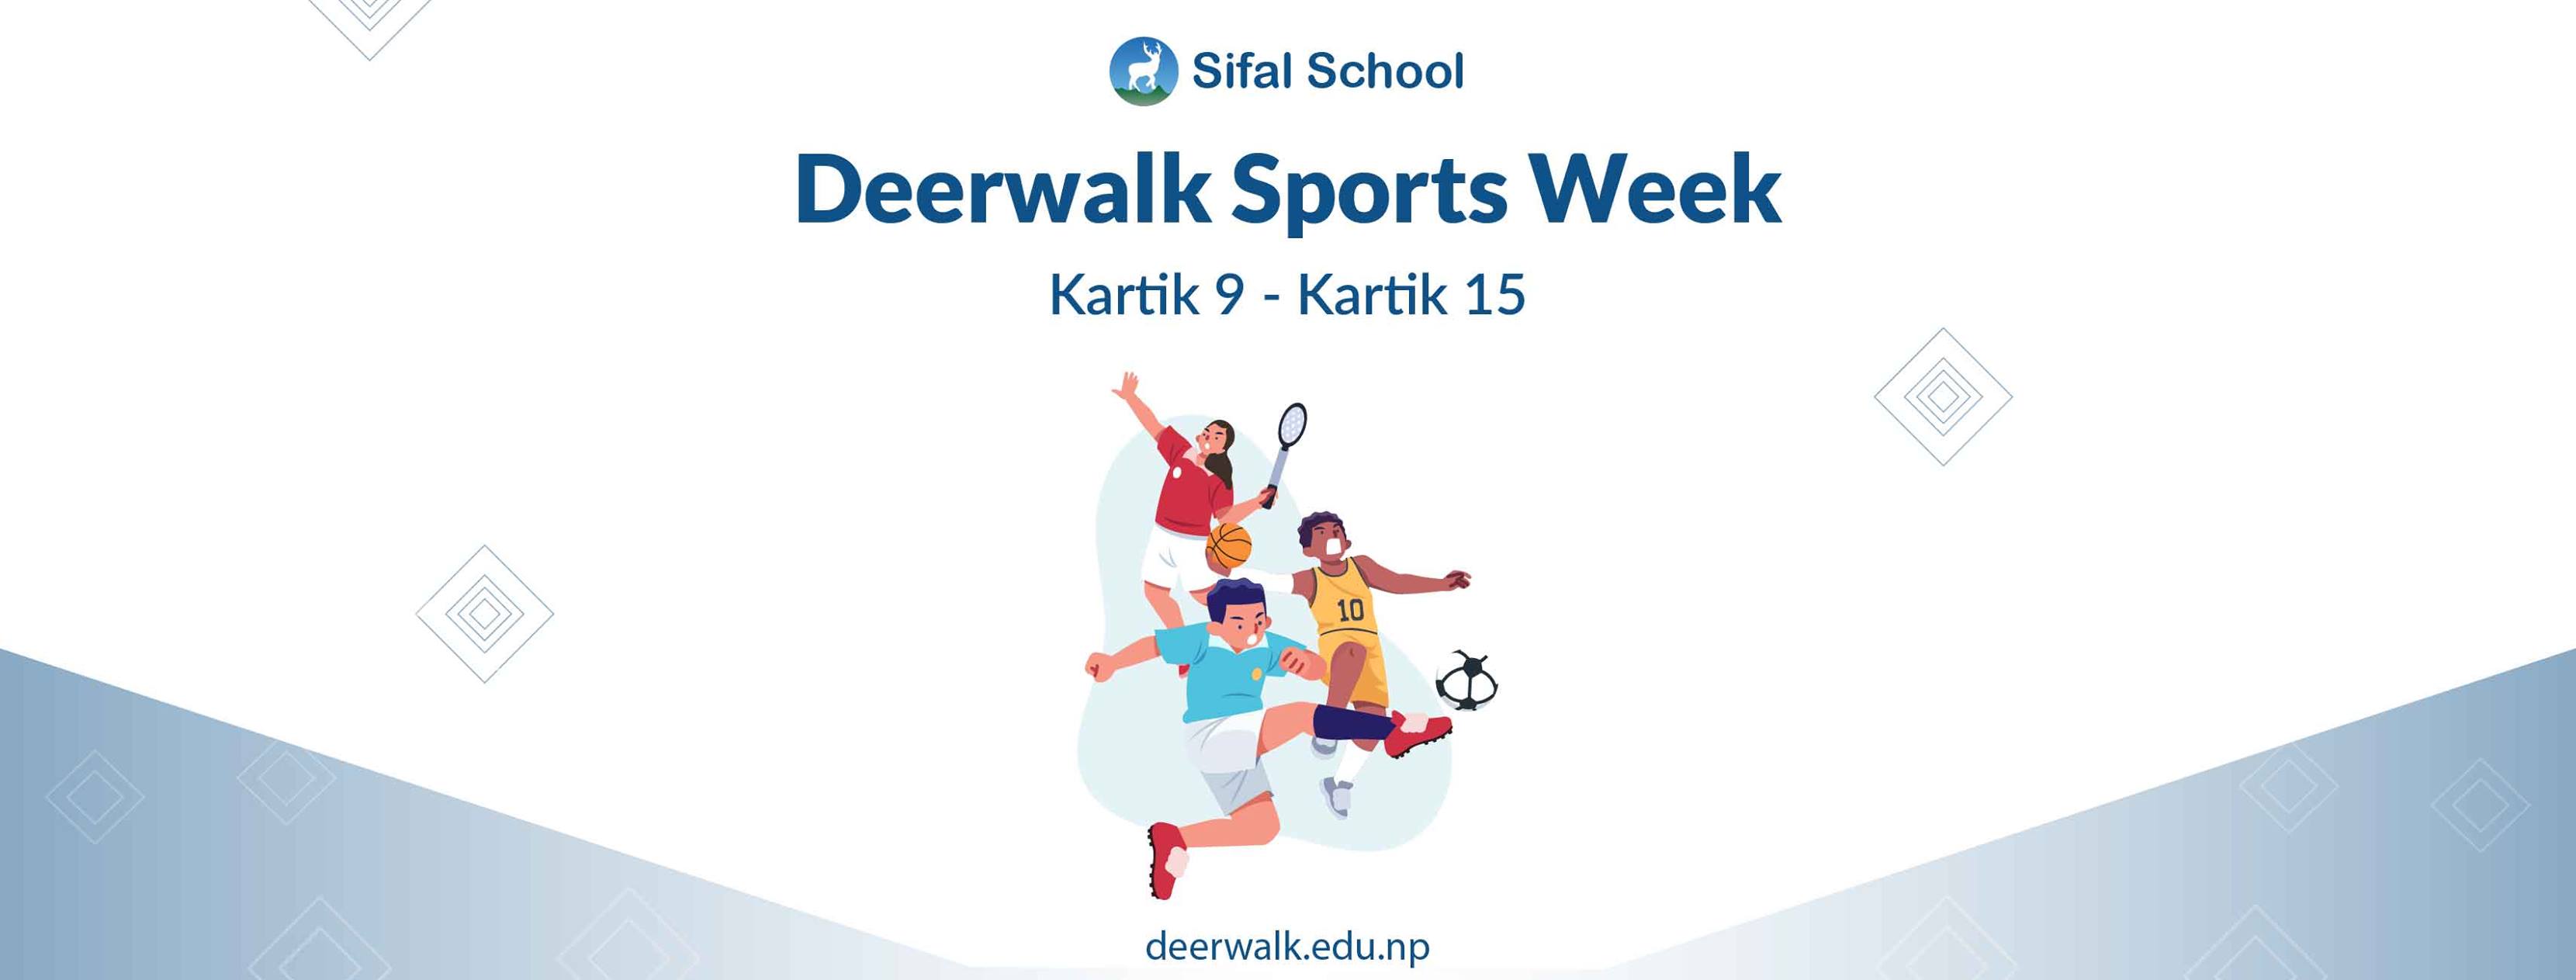 Deerwalk Sports Week